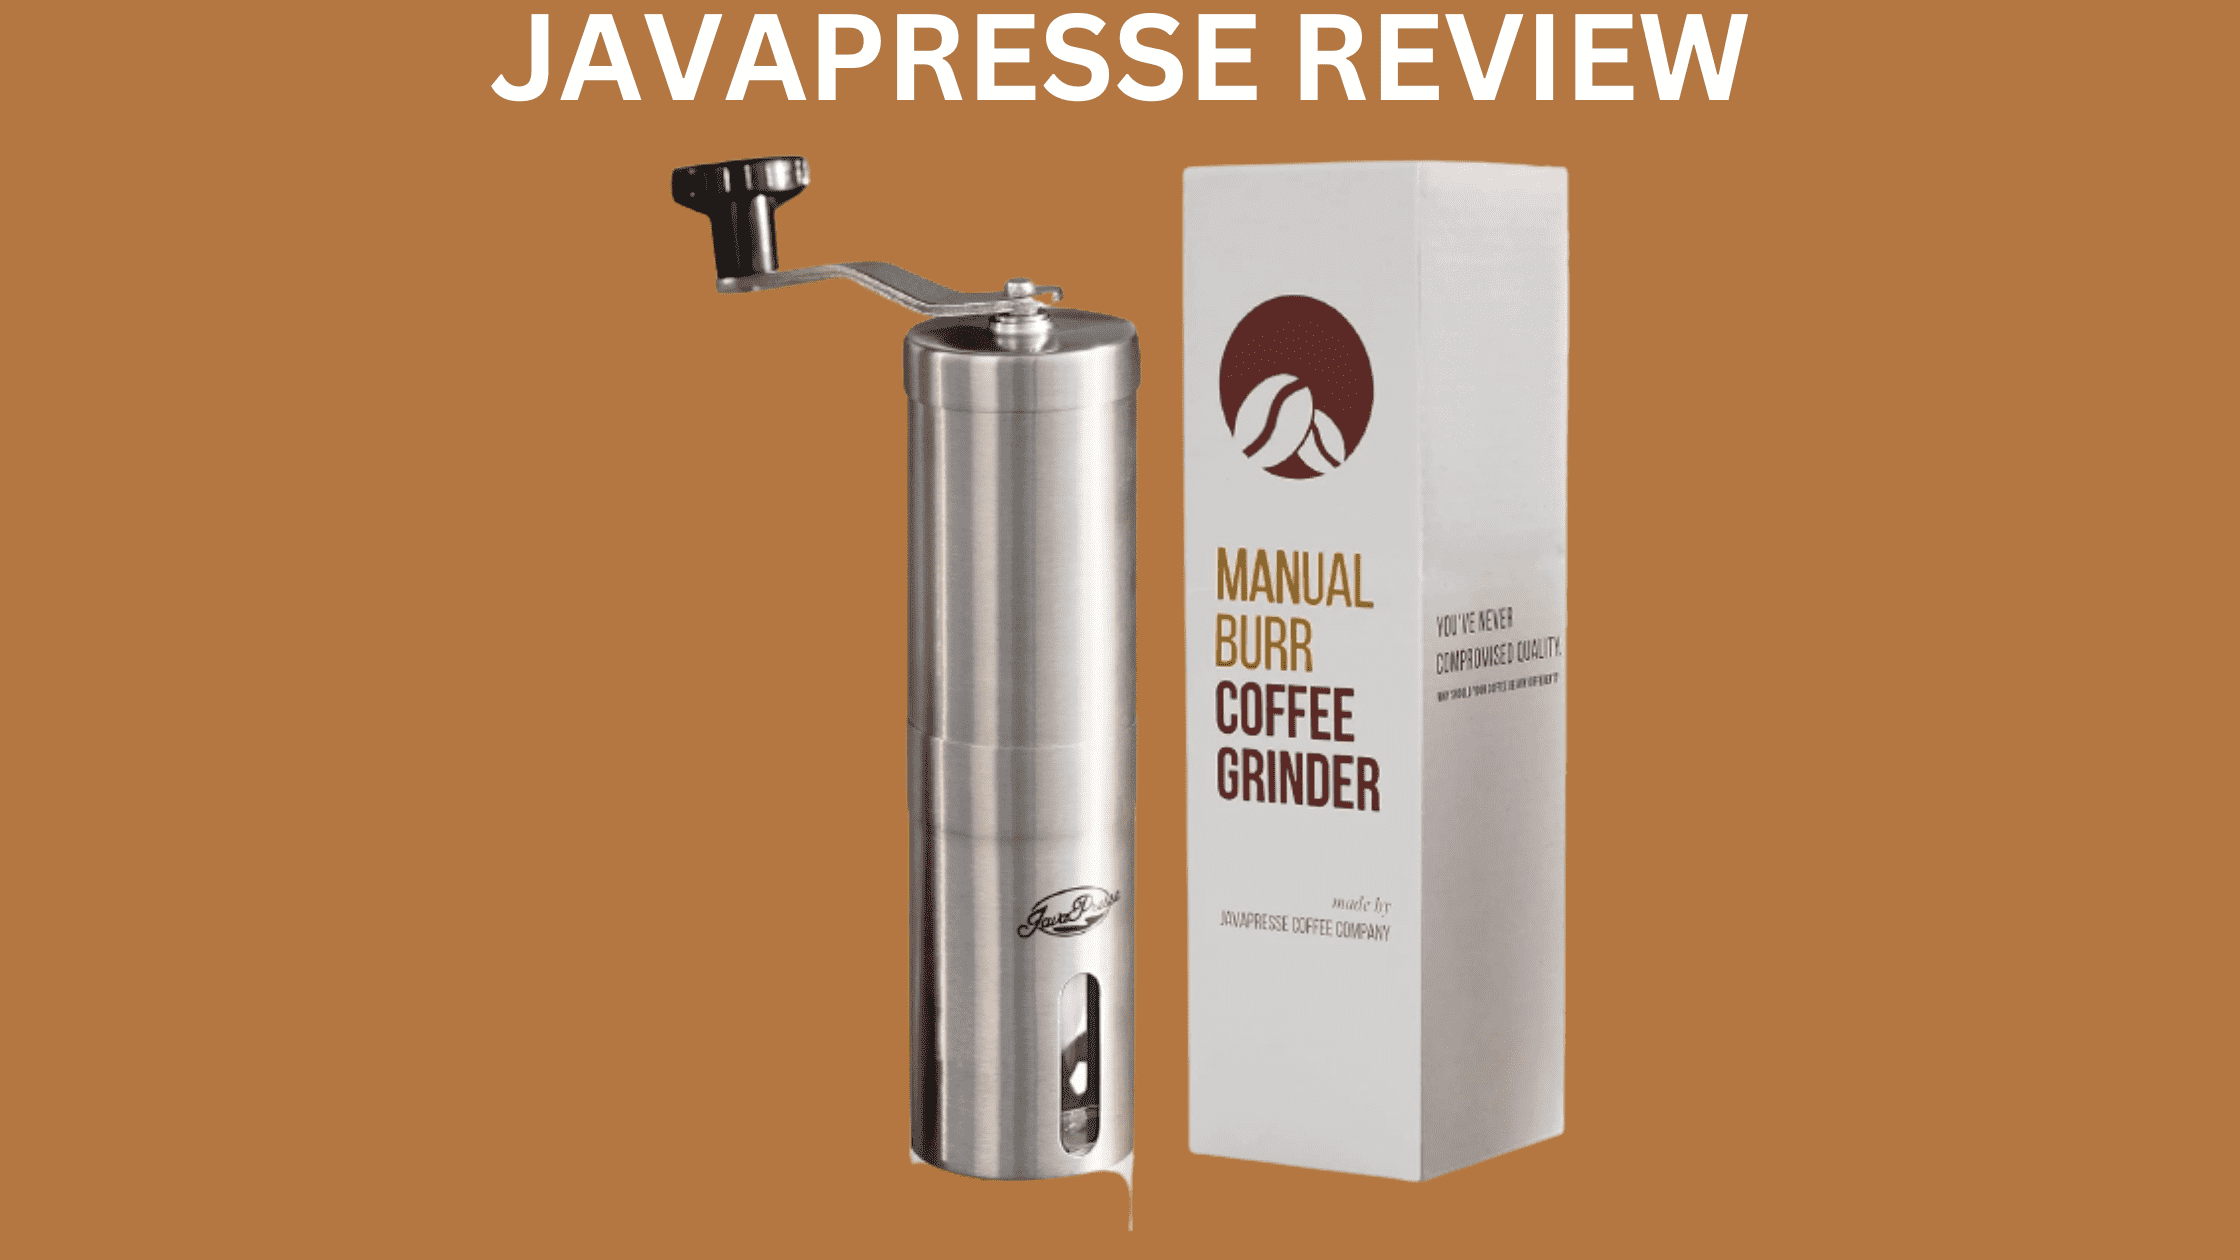 JavaPresse Manual Coffee Grinder Review